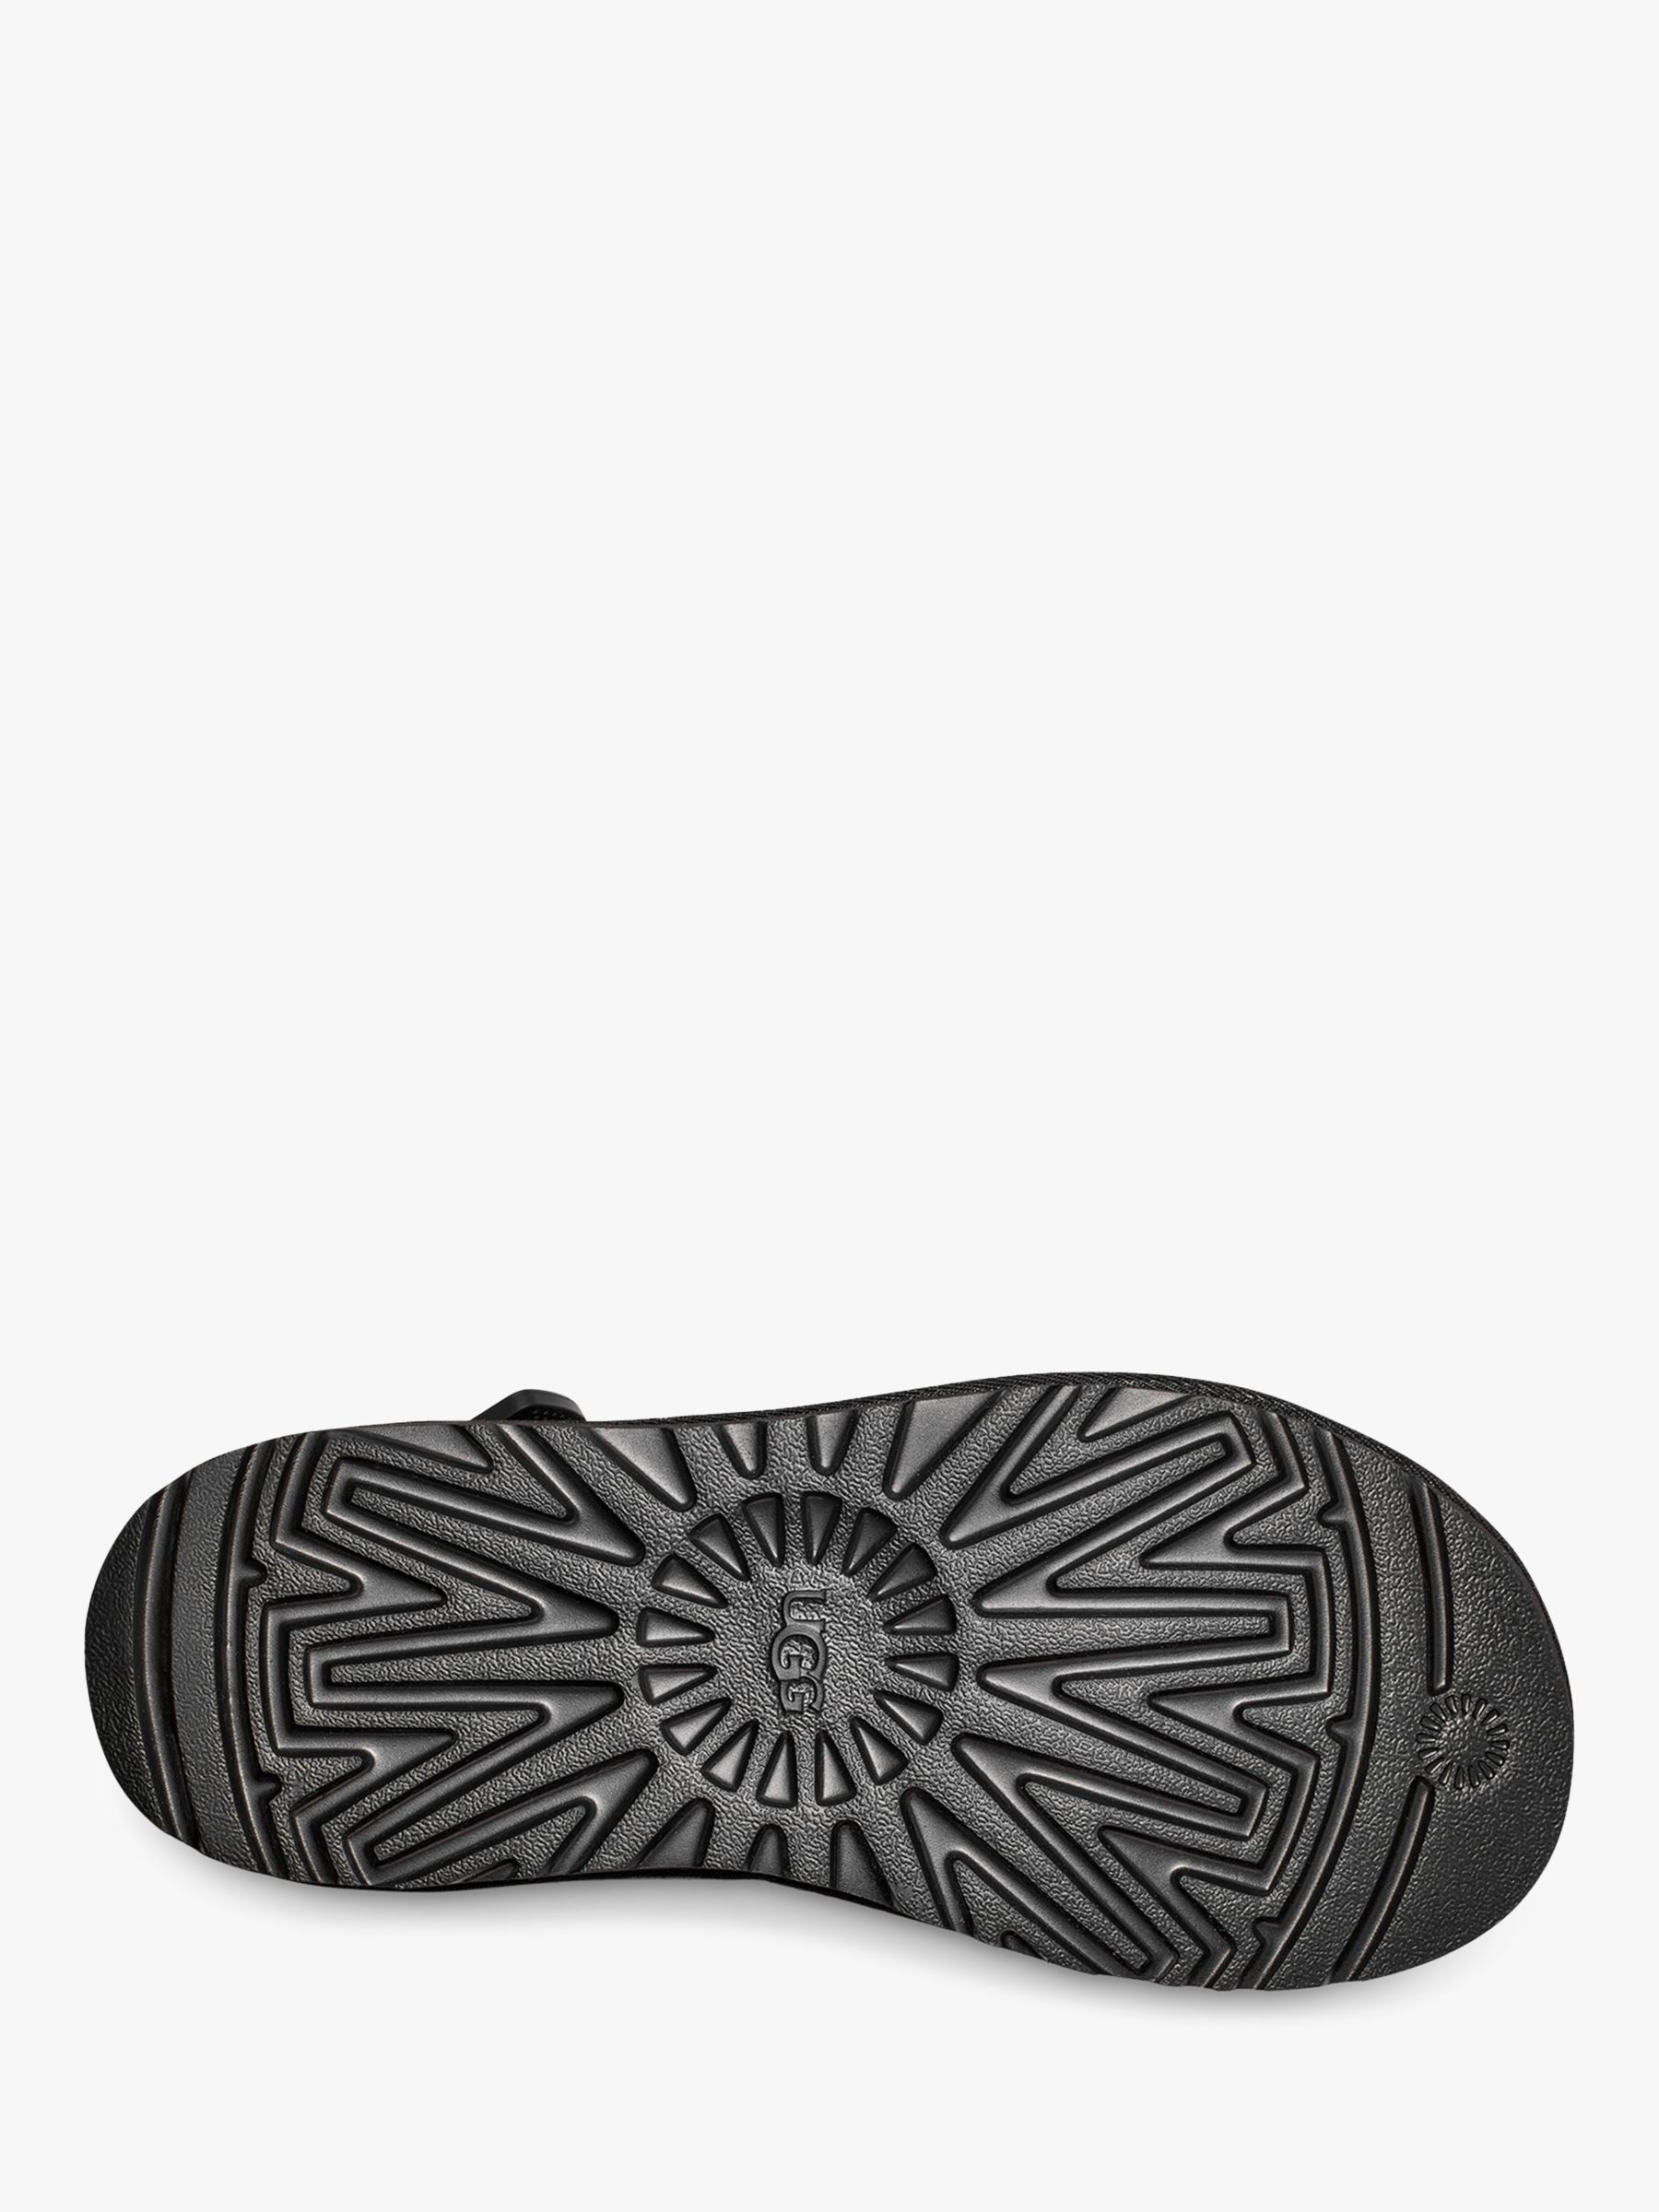 UGG Goldencoast Multistrap Sandals, Black, 9